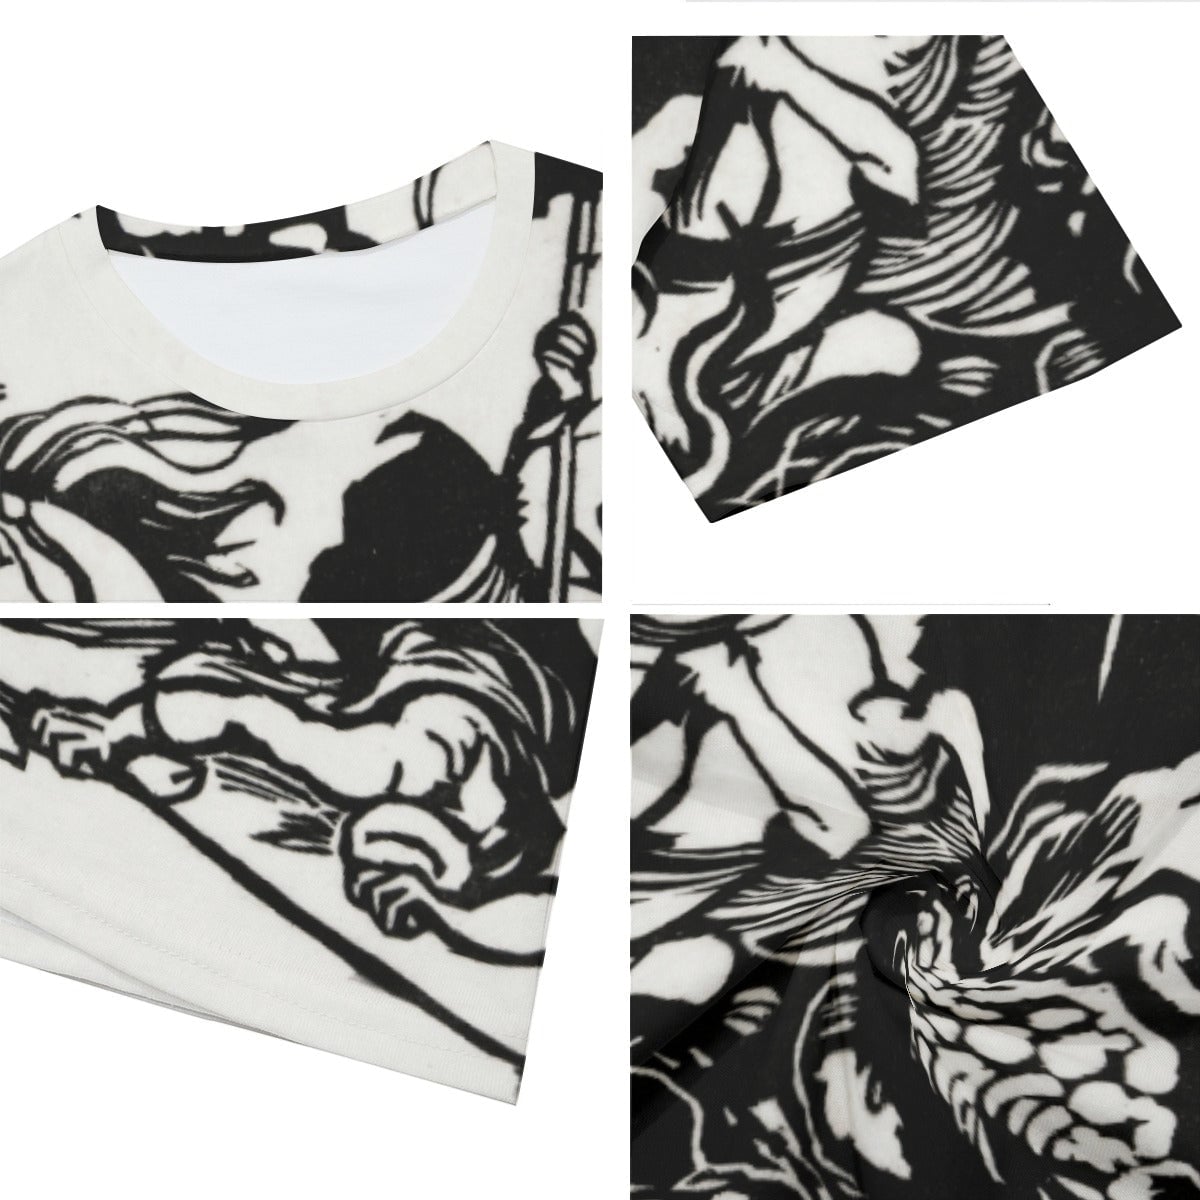 Franz Marc’s Lion Hunt T-Shirt - Famous Artwork Tee